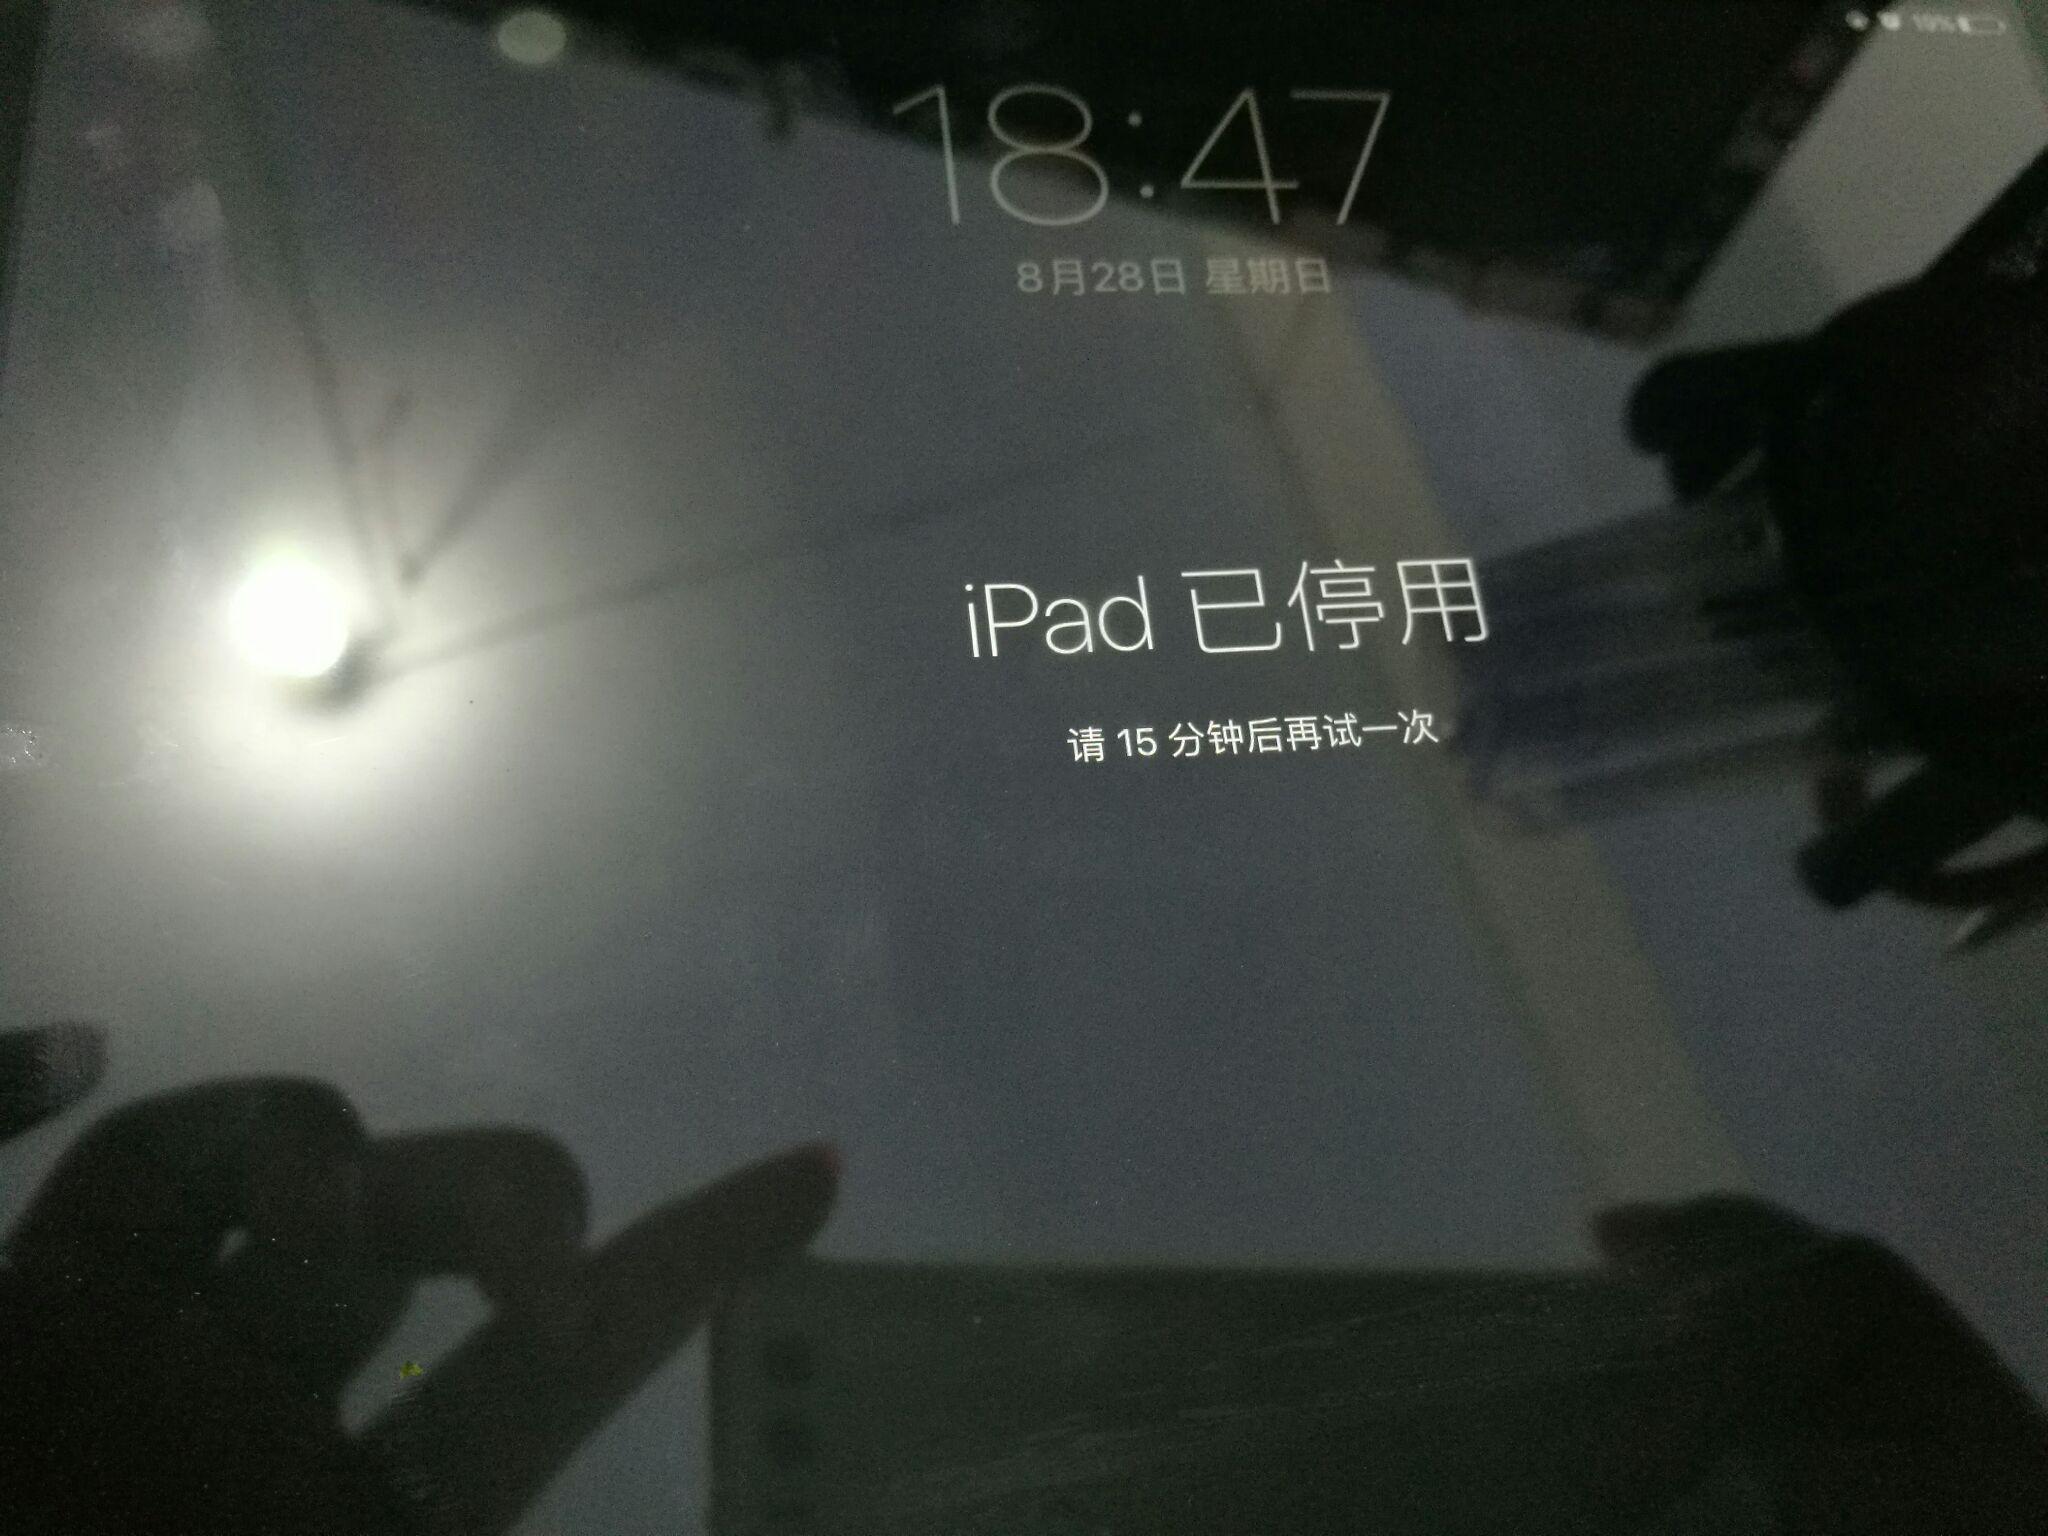 iPad mini2忘记密码了怎么办? - iPad mini